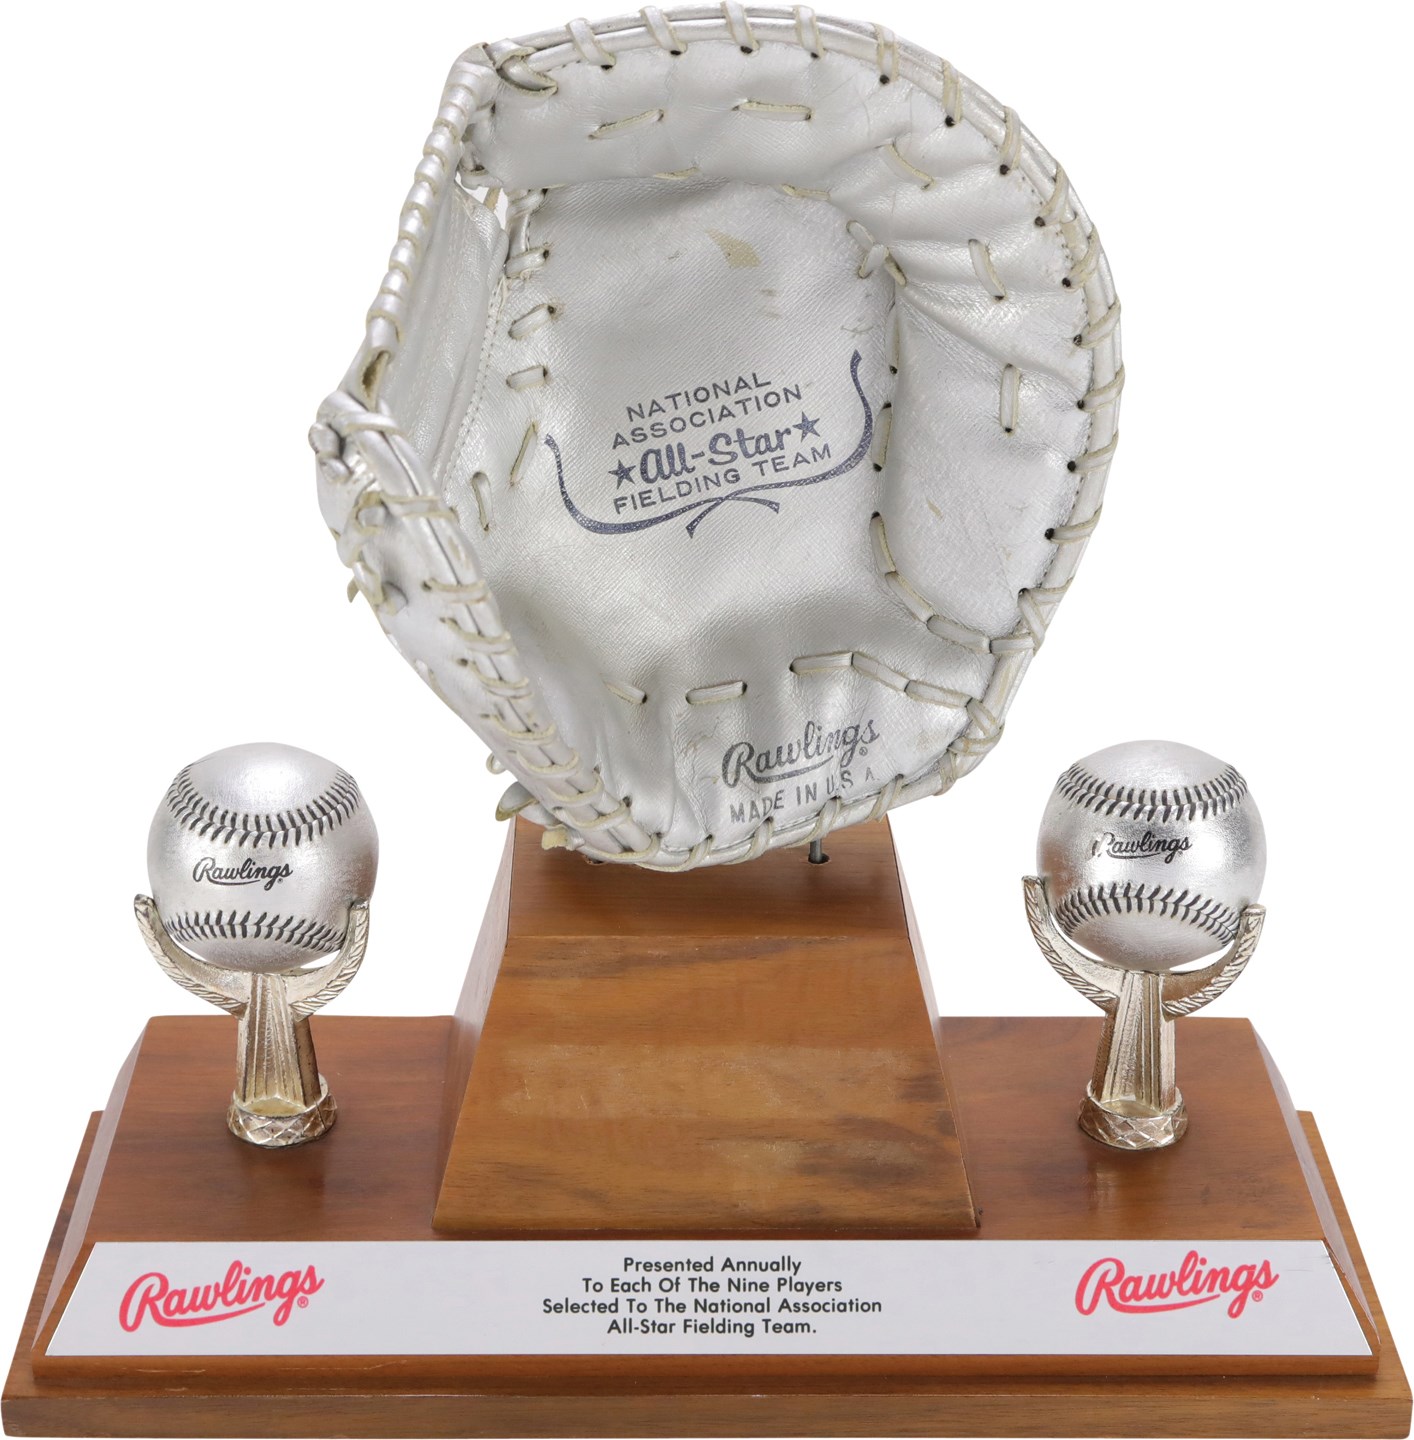 - National Association All-Star Fielding Team Silver Glove Award